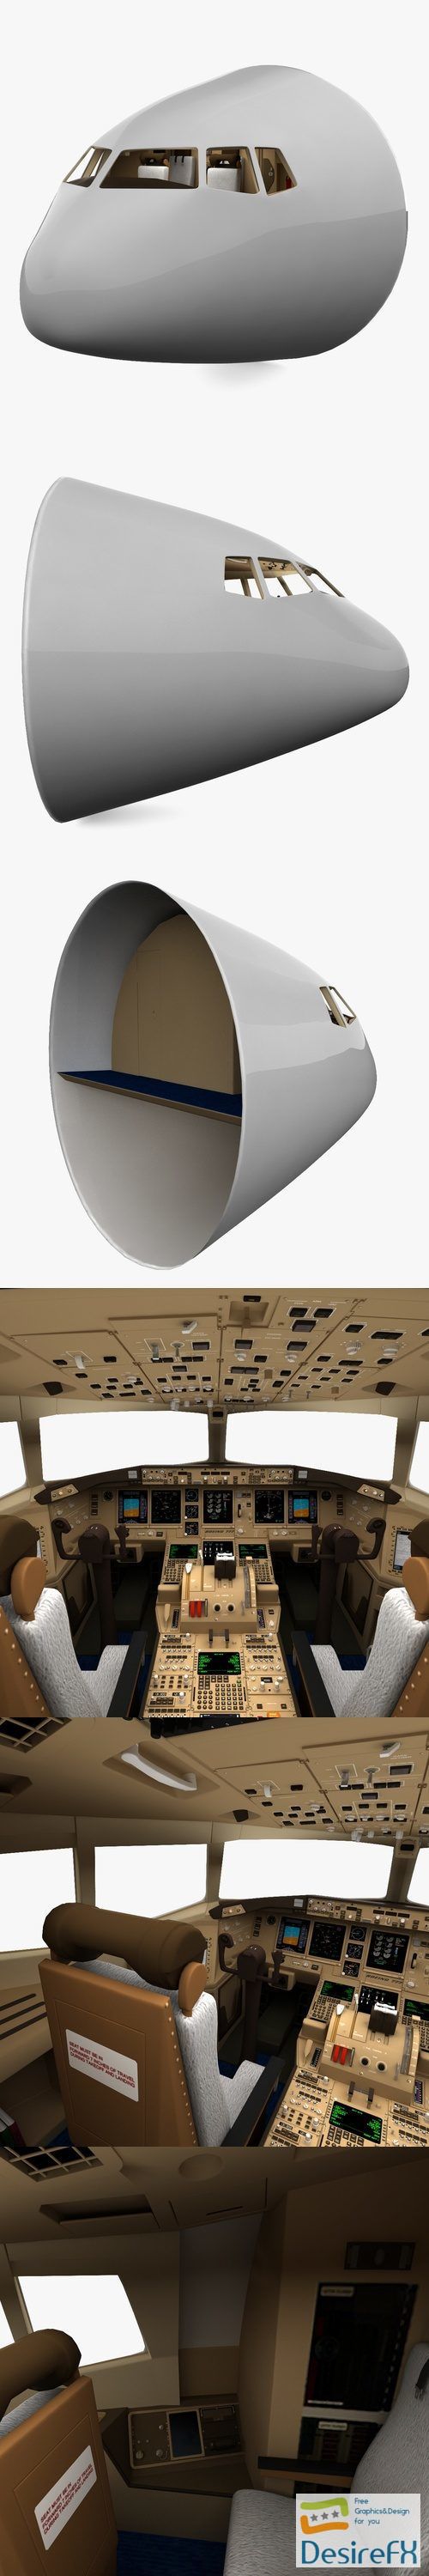 Boeing 777 Cockpit 3D Model